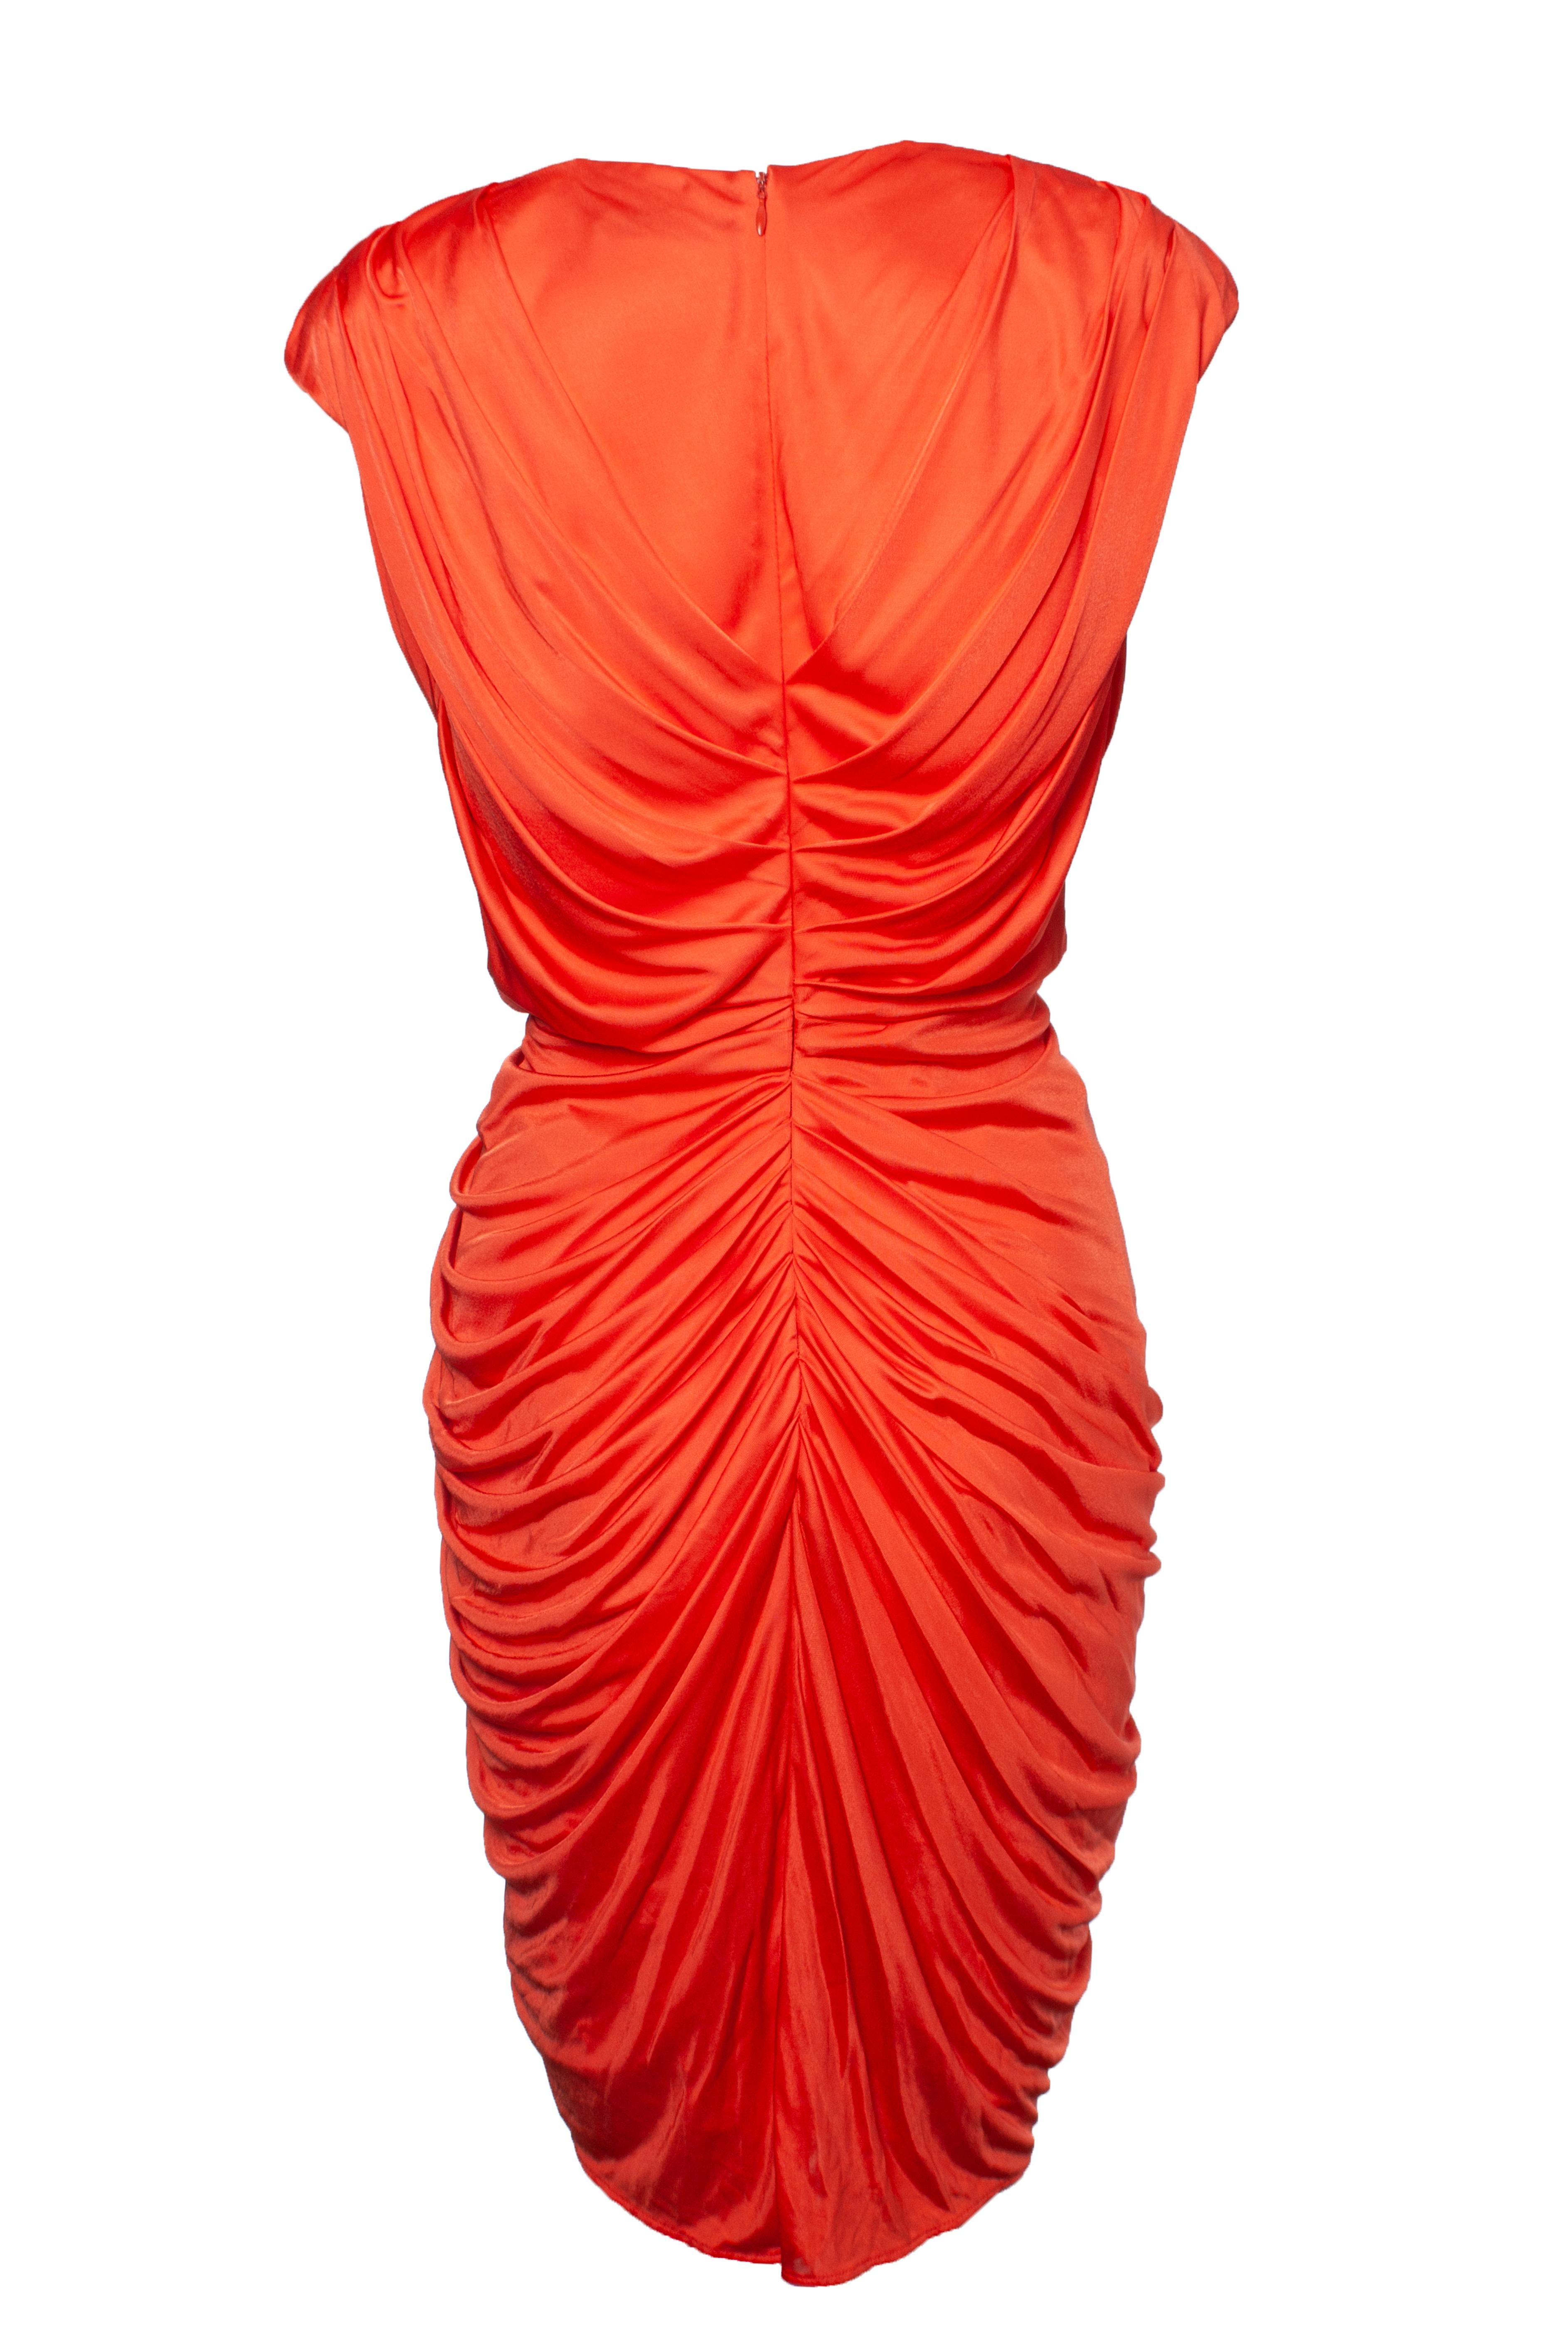 Blumarine, Robe drapée orange avec embellissements en cristal. L'article est en très bon état. La robe est munie d'épaulettes.

• CONDITION : très bon état. 

• TAILLE : IT44 - M-ONE 

• MESURES : longueur 97 cm, largeur 41 cm, taille 34 cm

•